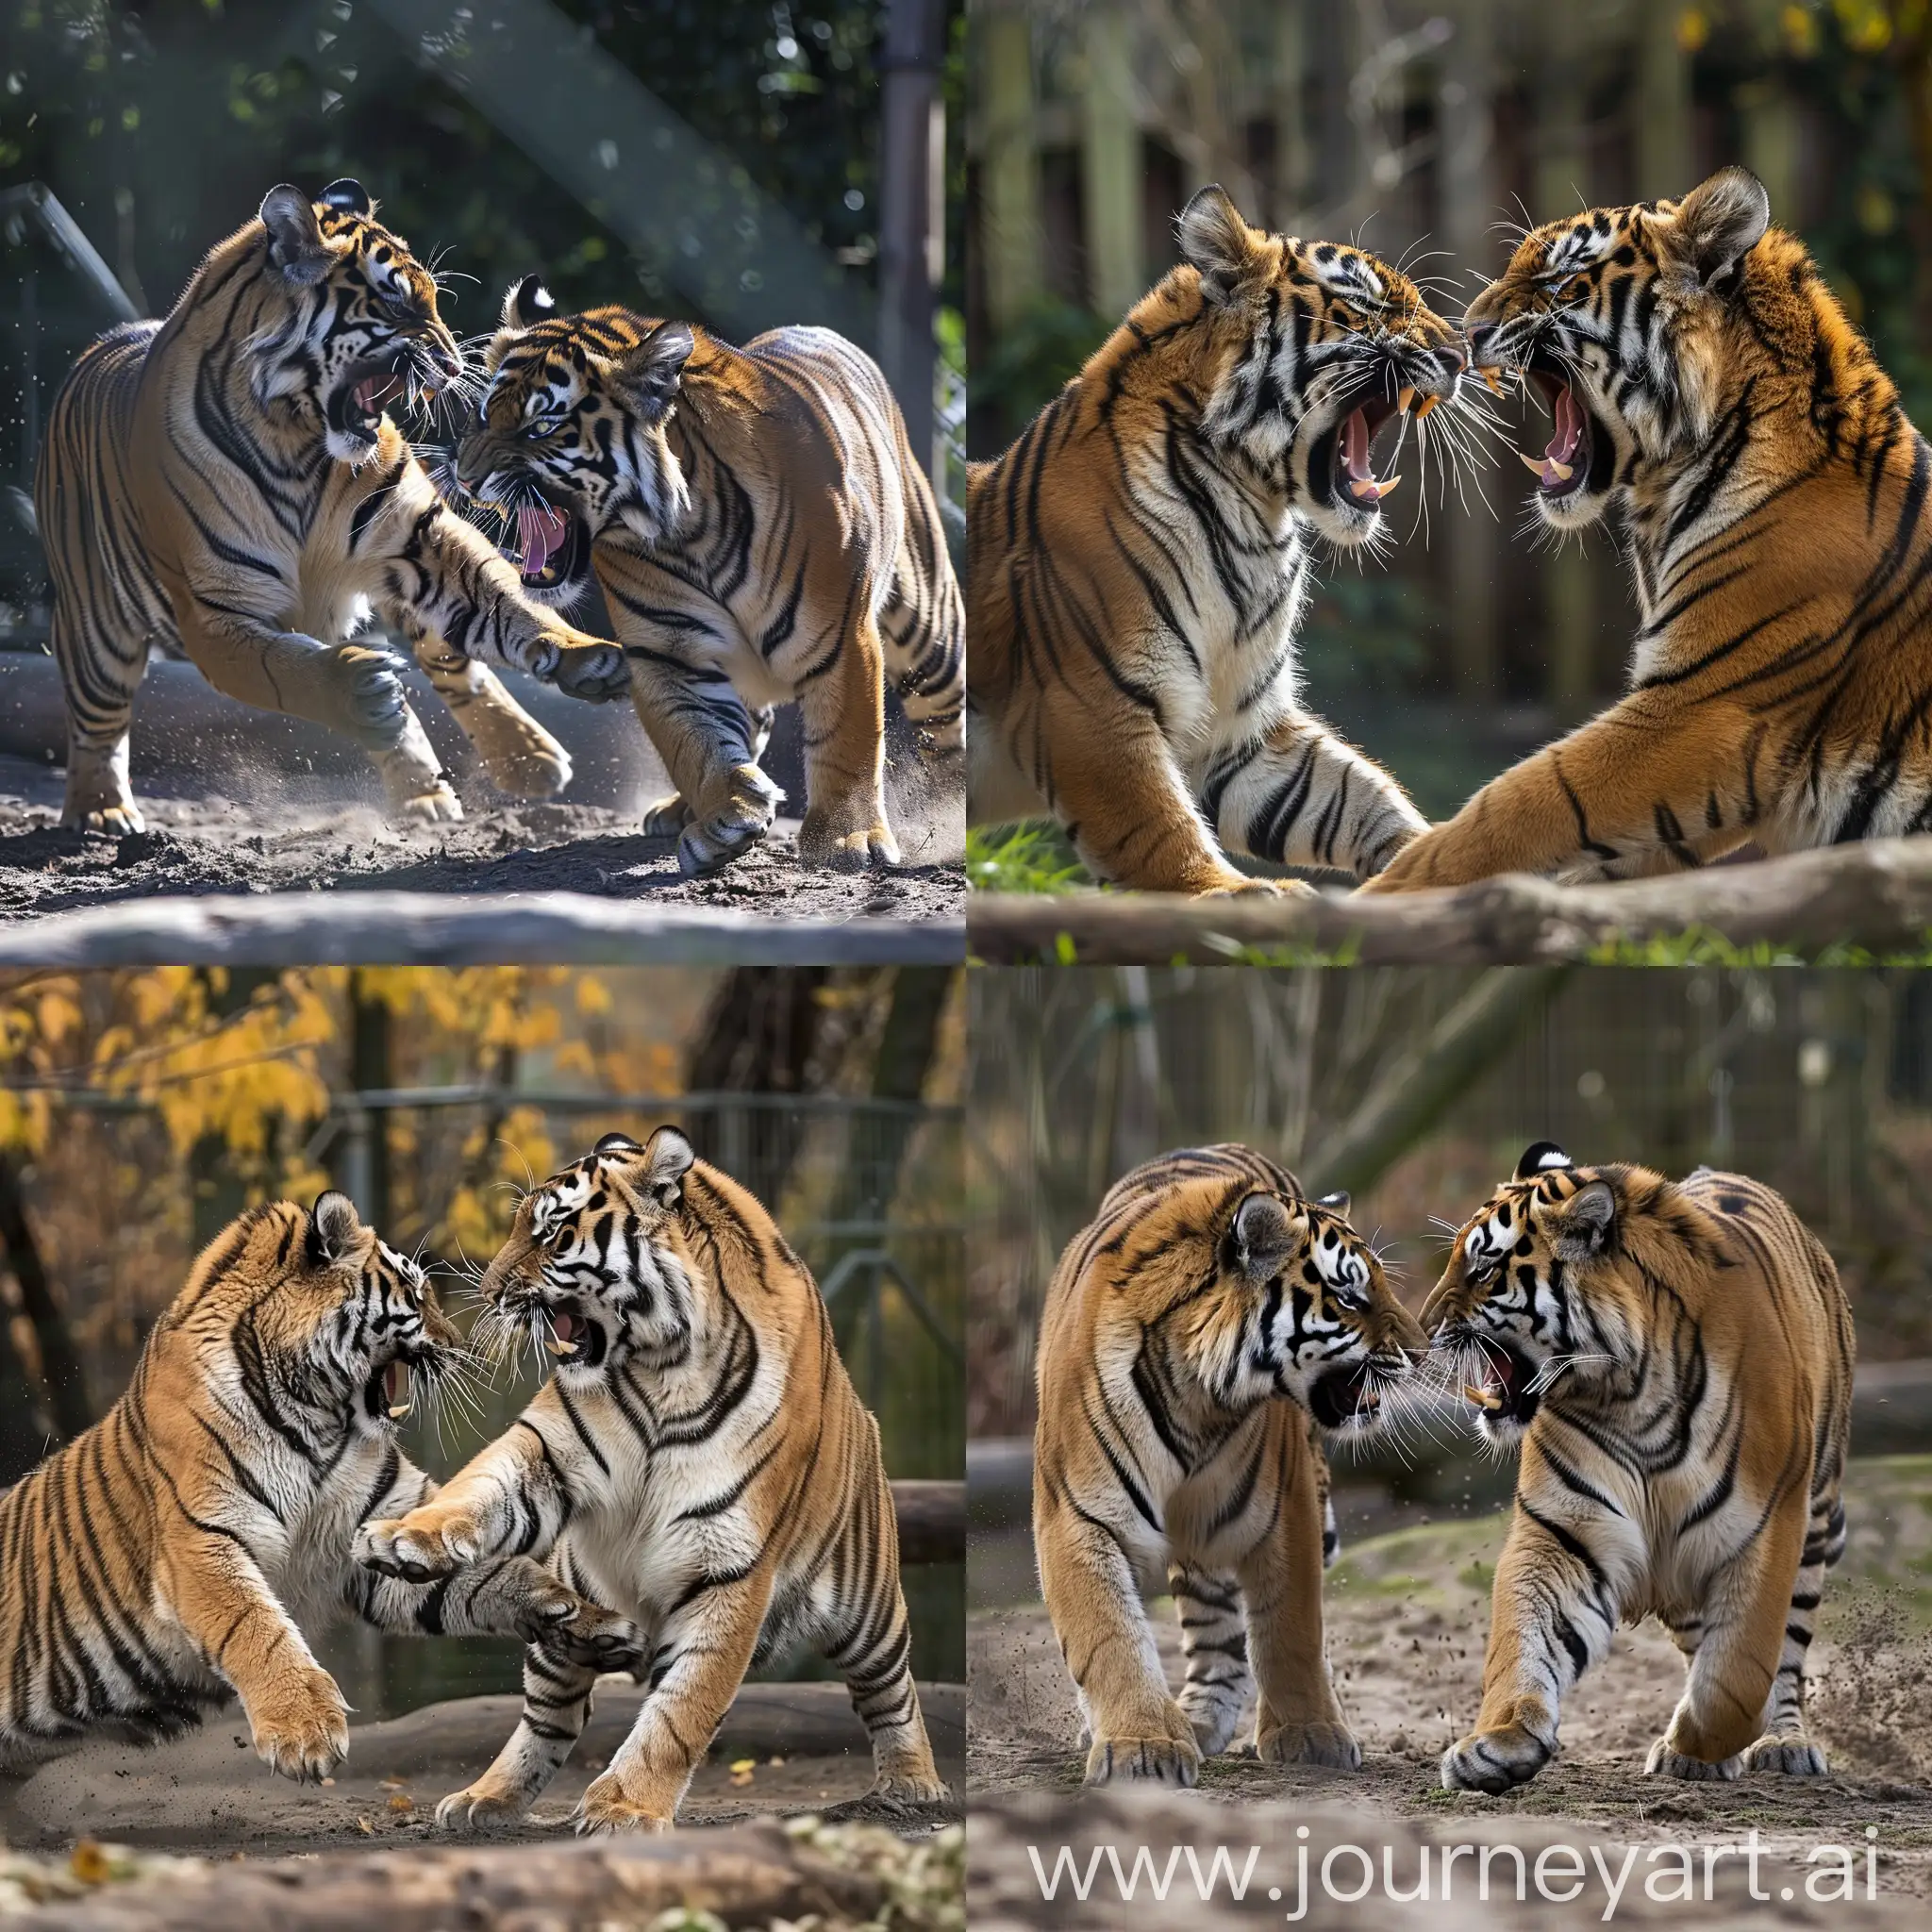 Fierce-Tiger-Battle-in-the-Wild